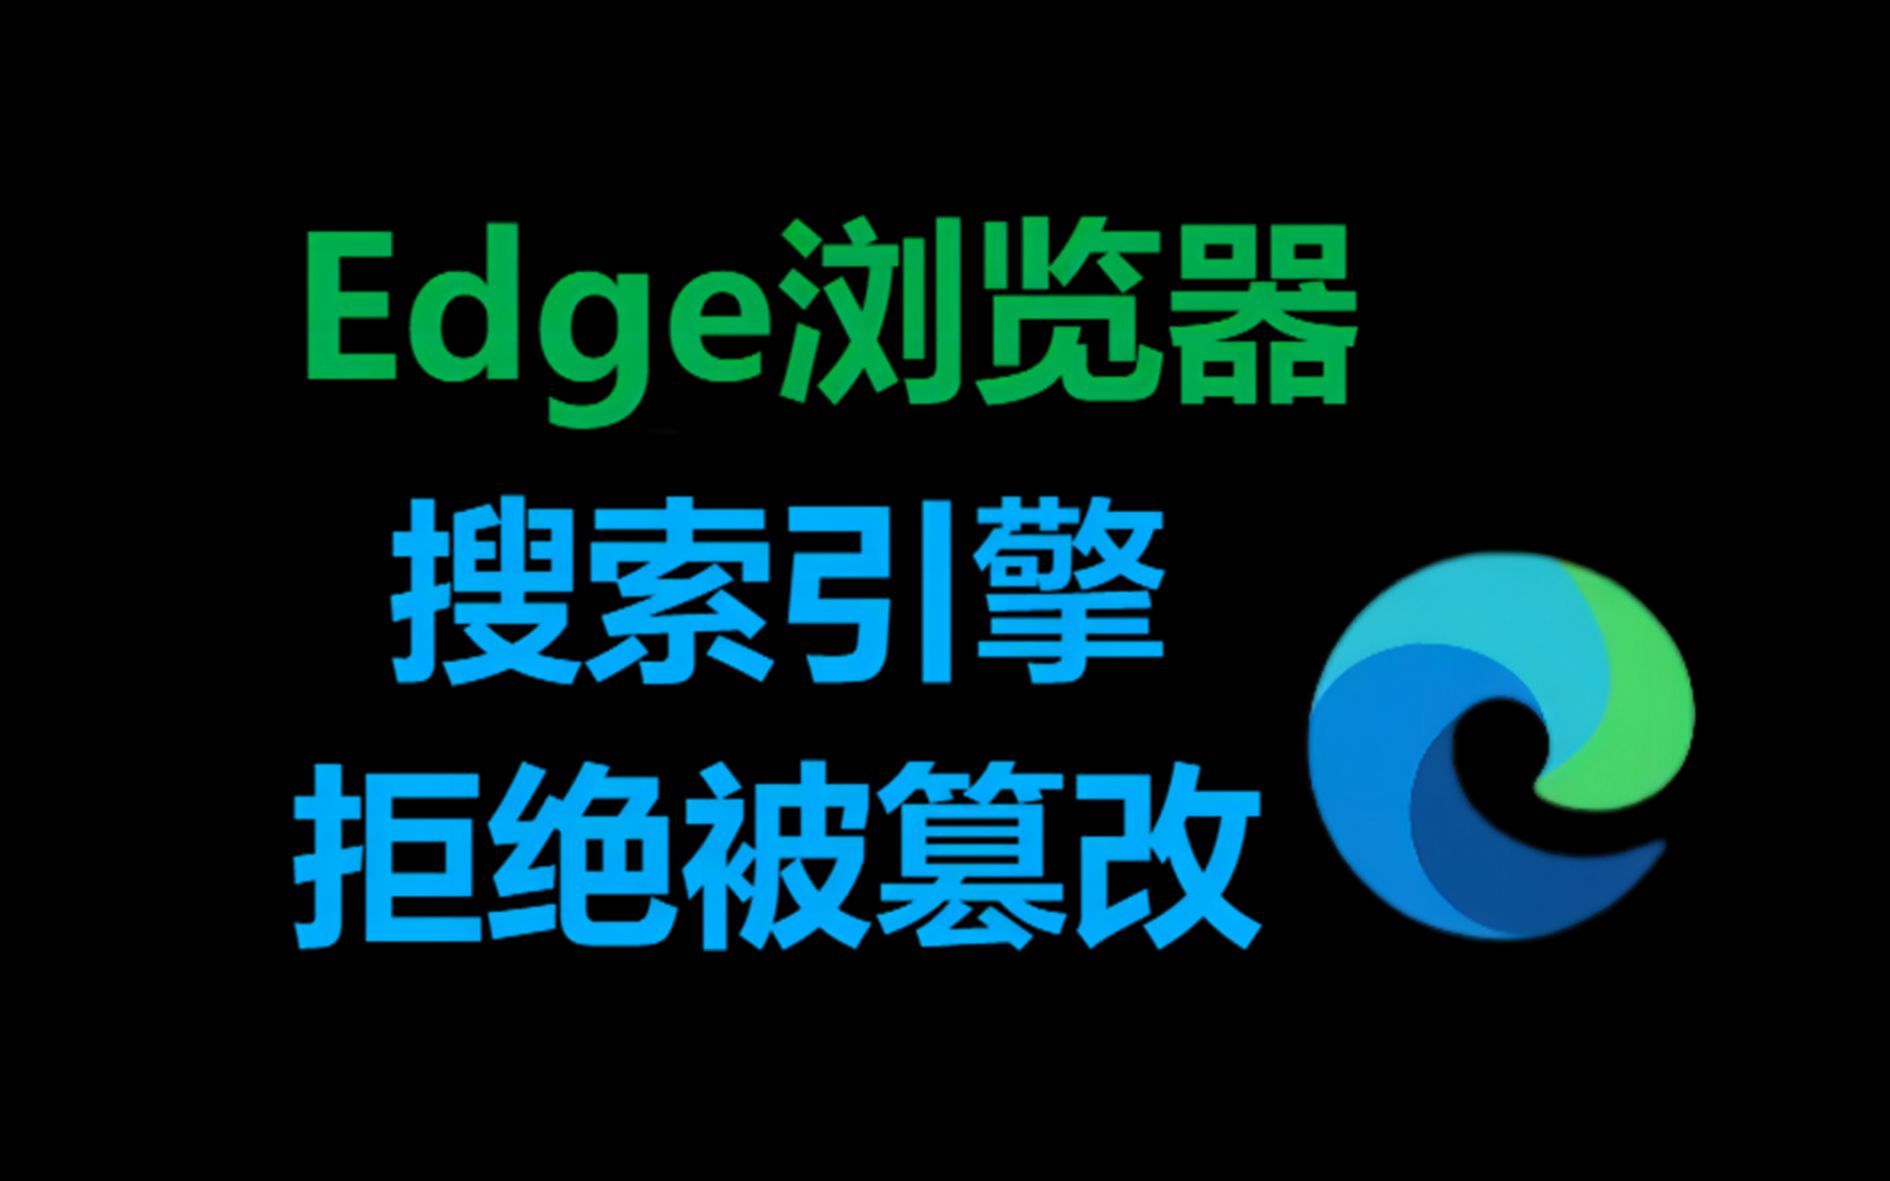 Edge浏览器|搜索引擎|拒绝被篡改